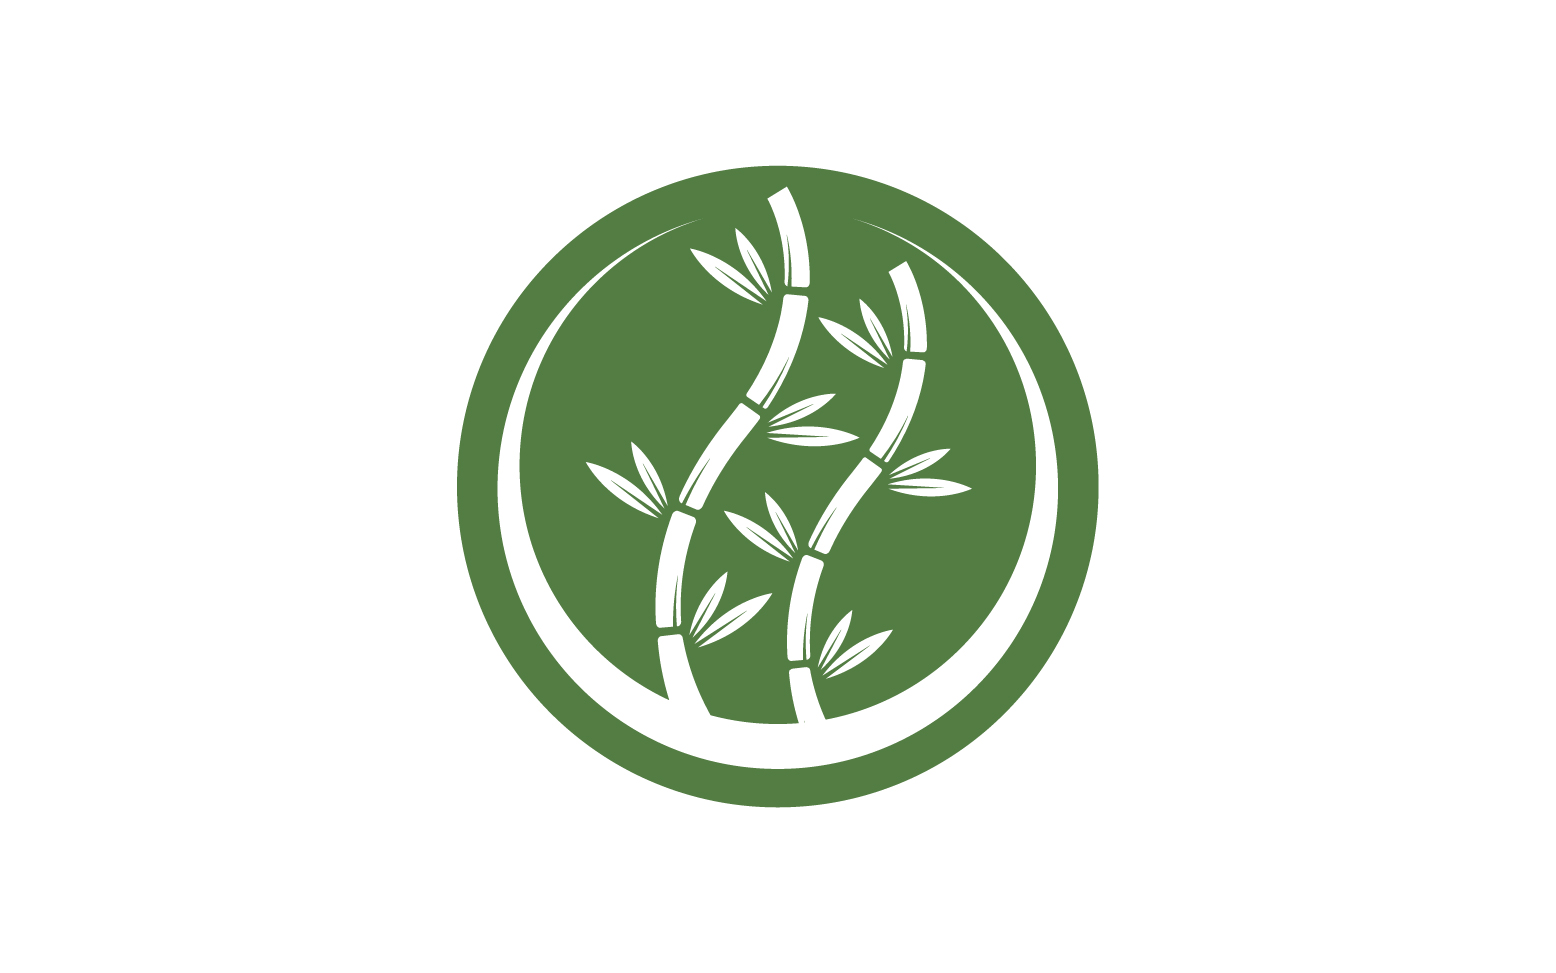 Bamboo tree logo vector v.19